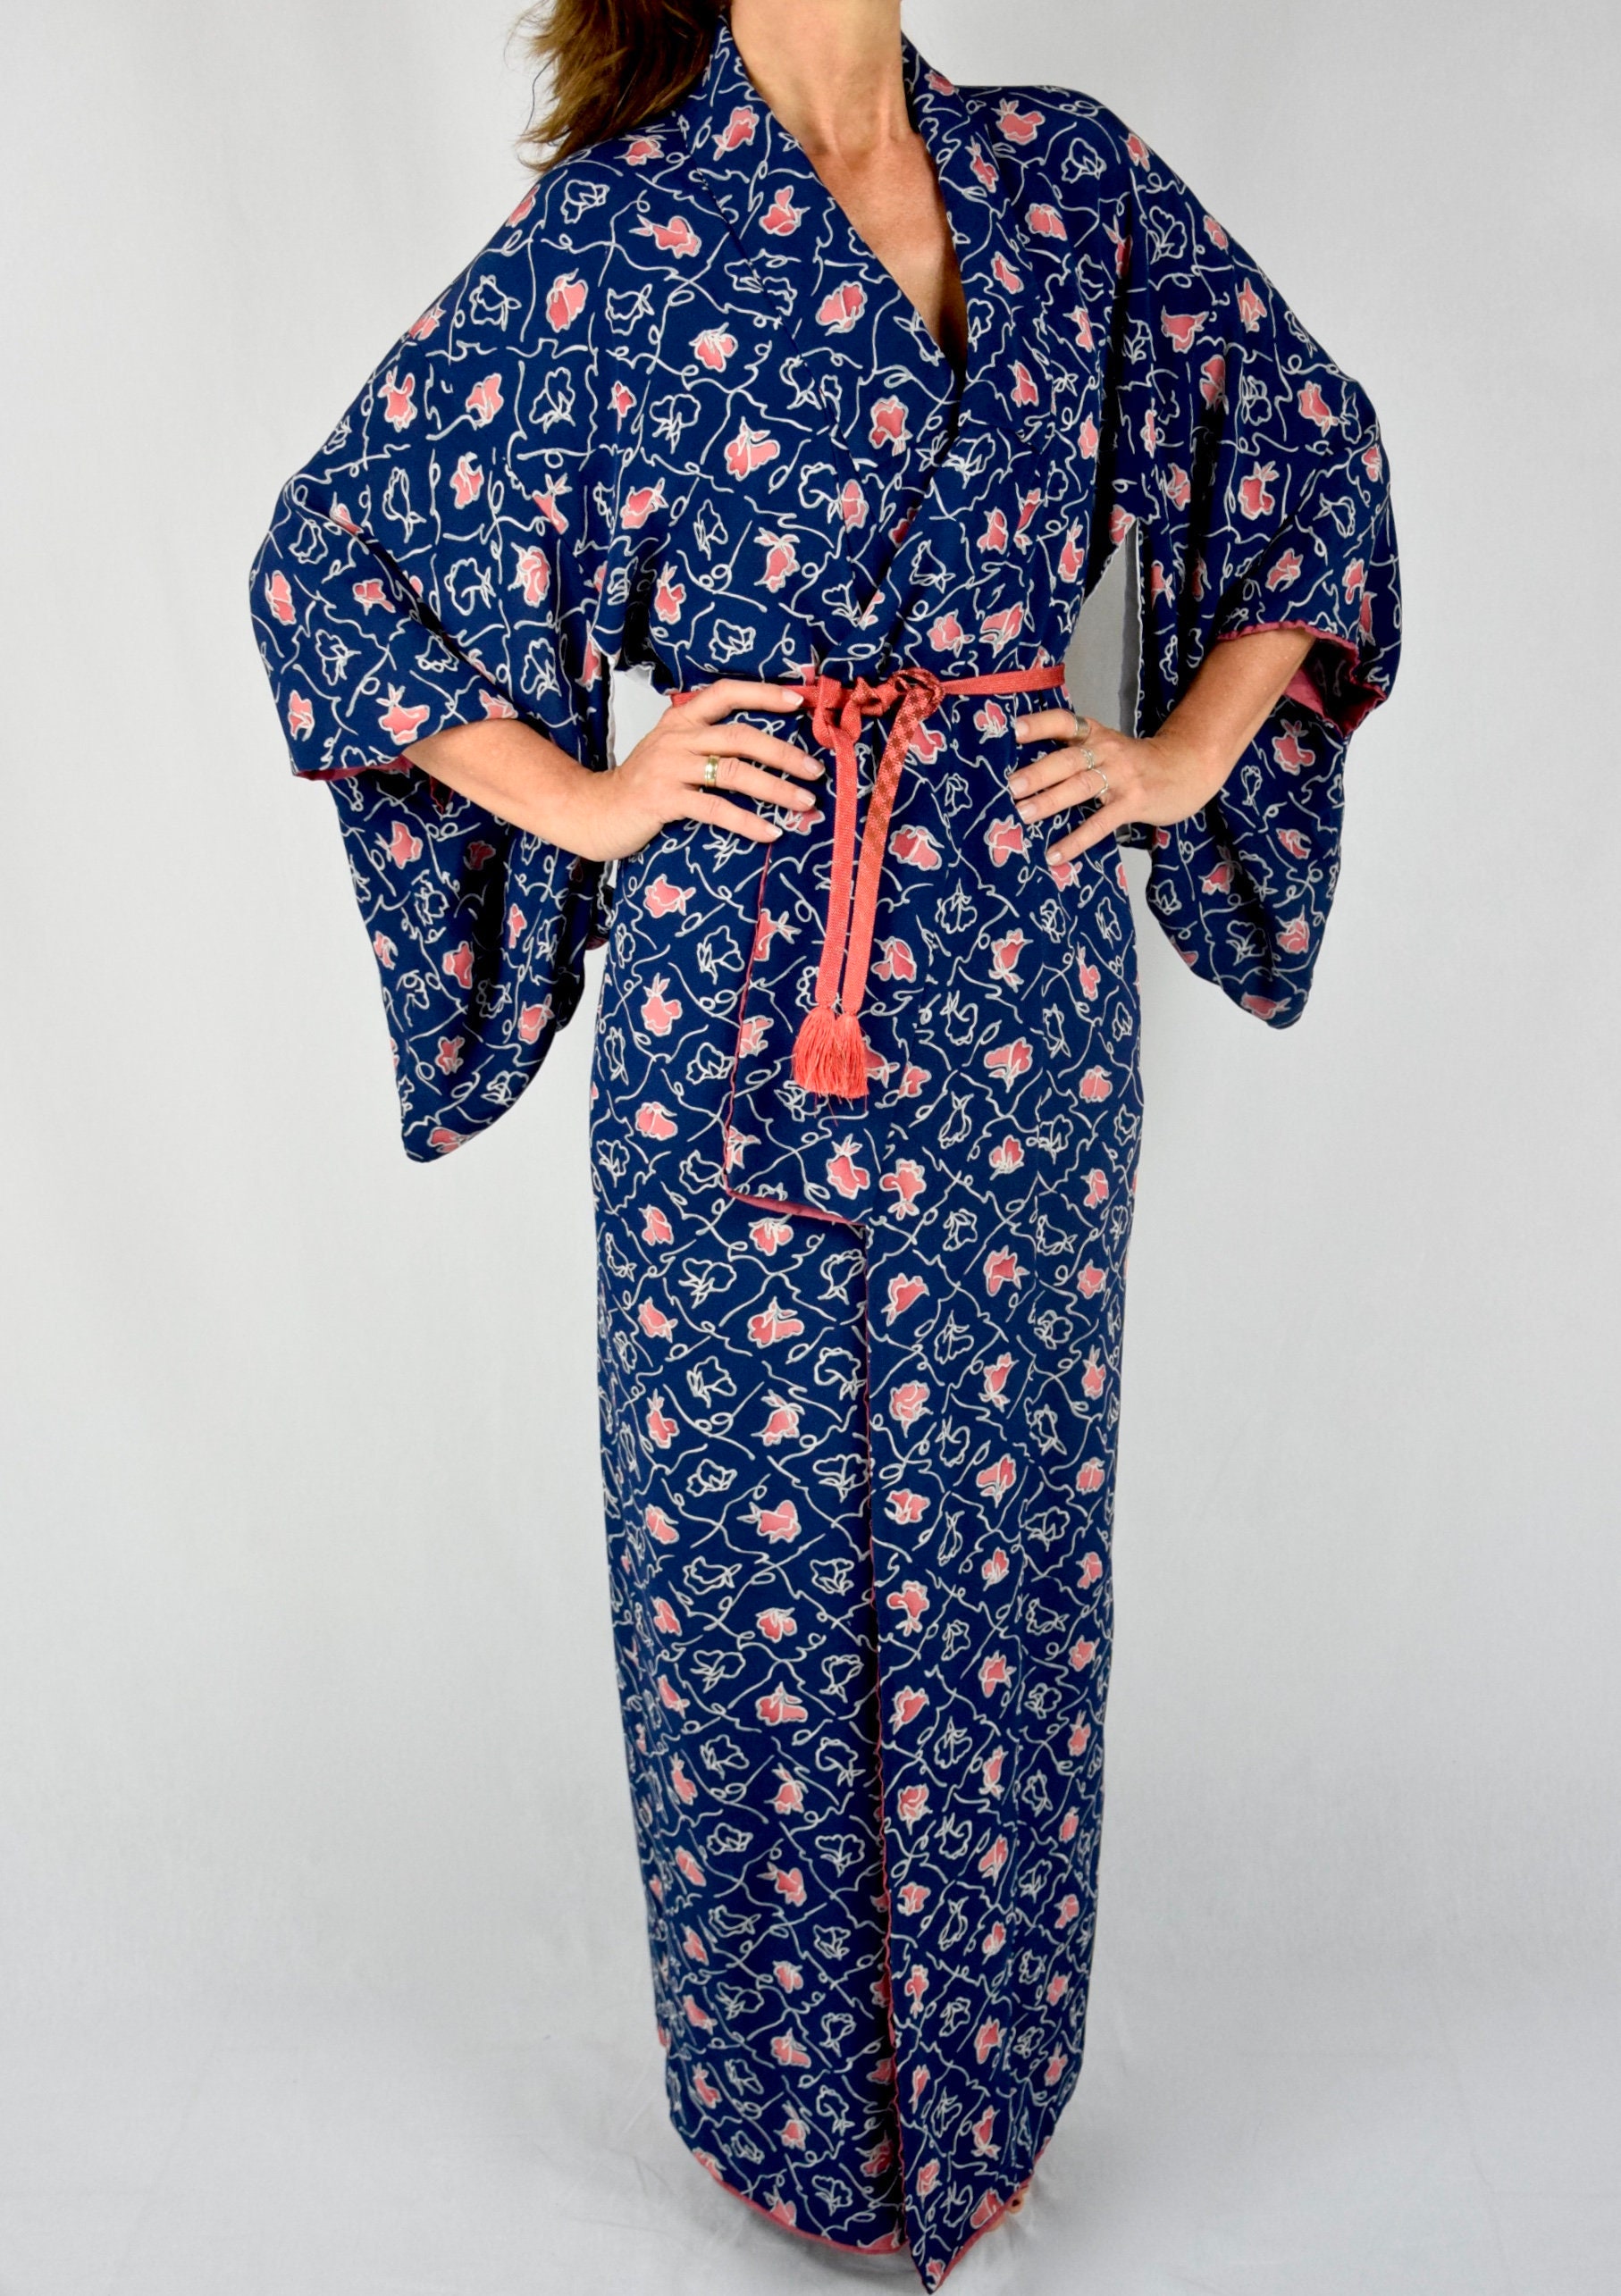 Kimono Dress, Japanese Vintage Kimono Robe in blue Silk with Obijime